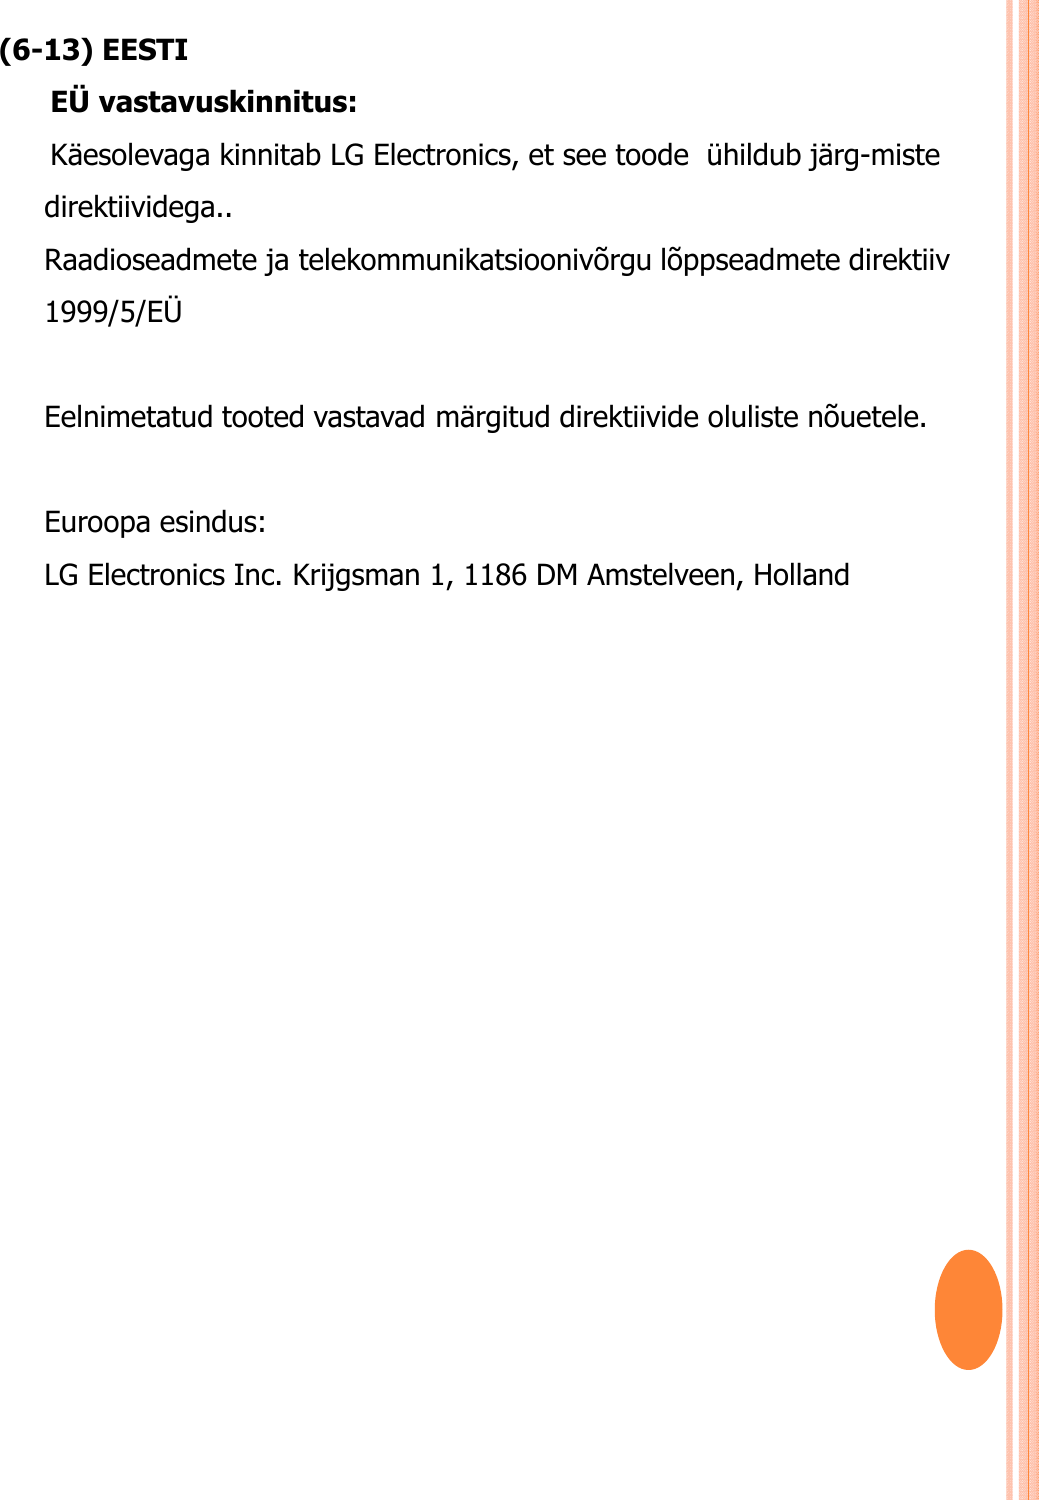 (6-13) EESTIEÜ vastavuskinnitus: Käesolevaga kinnitab LG Electronics, et see toode  ühildub järg-miste direktiividega.. Raadioseadmete ja telekommunikatsioonivõrgu lõppseadmete direktiiv 1999/5/EÜ Eelnimetatud tooted vastavad märgitud direktiivide oluliste nõuetele.Euroopa esindus: LG Electronics Inc. Krijgsman 1, 1186 DM Amstelveen, Holland